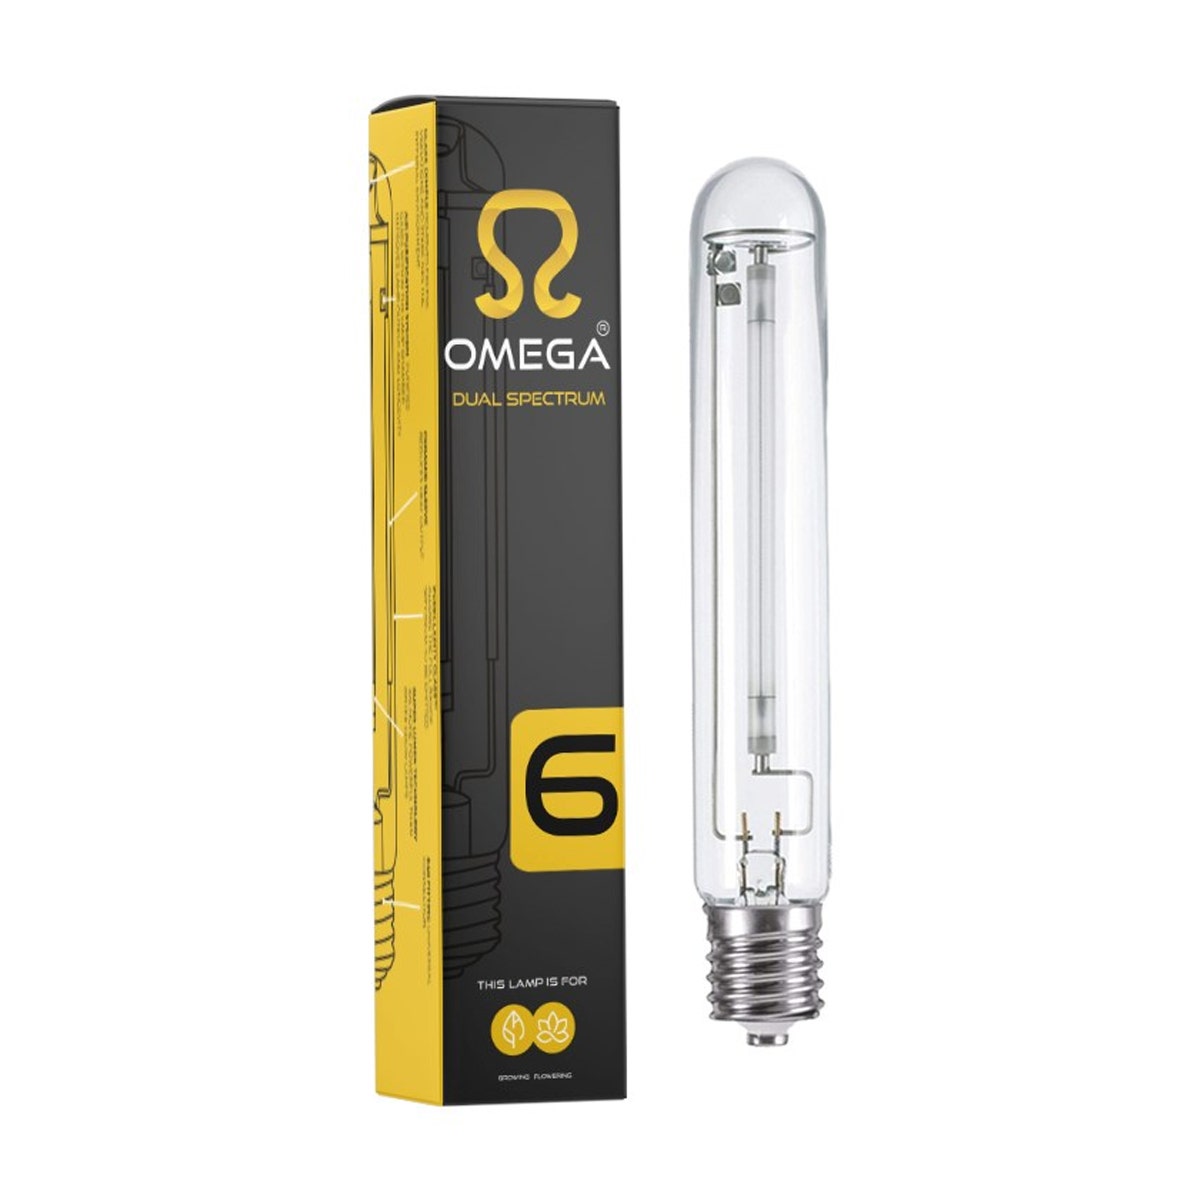 Omega 600w HPS Lamp